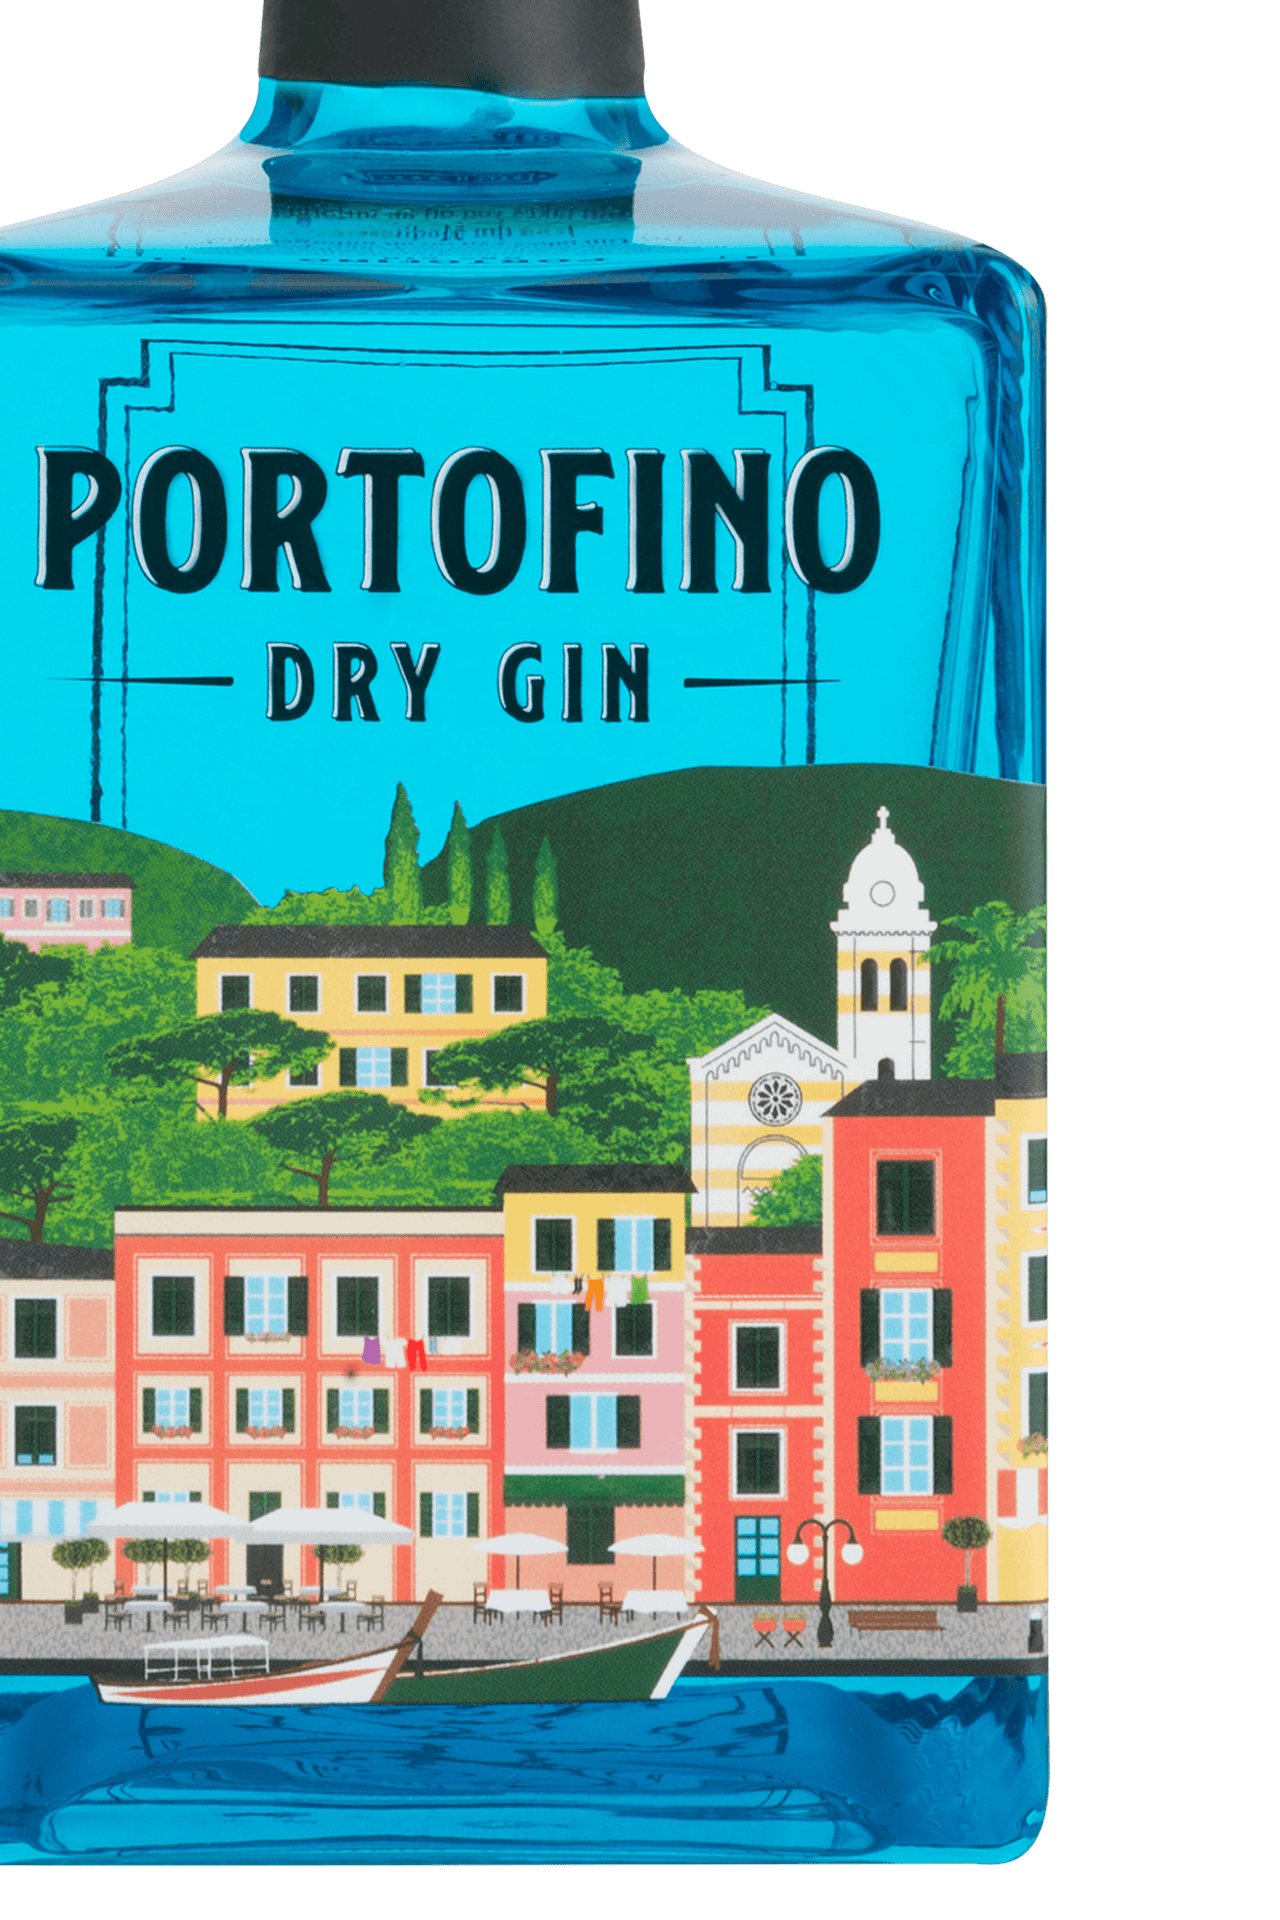 PORTOFINO DRY GIN 500 ml - Portofino Dry Gin